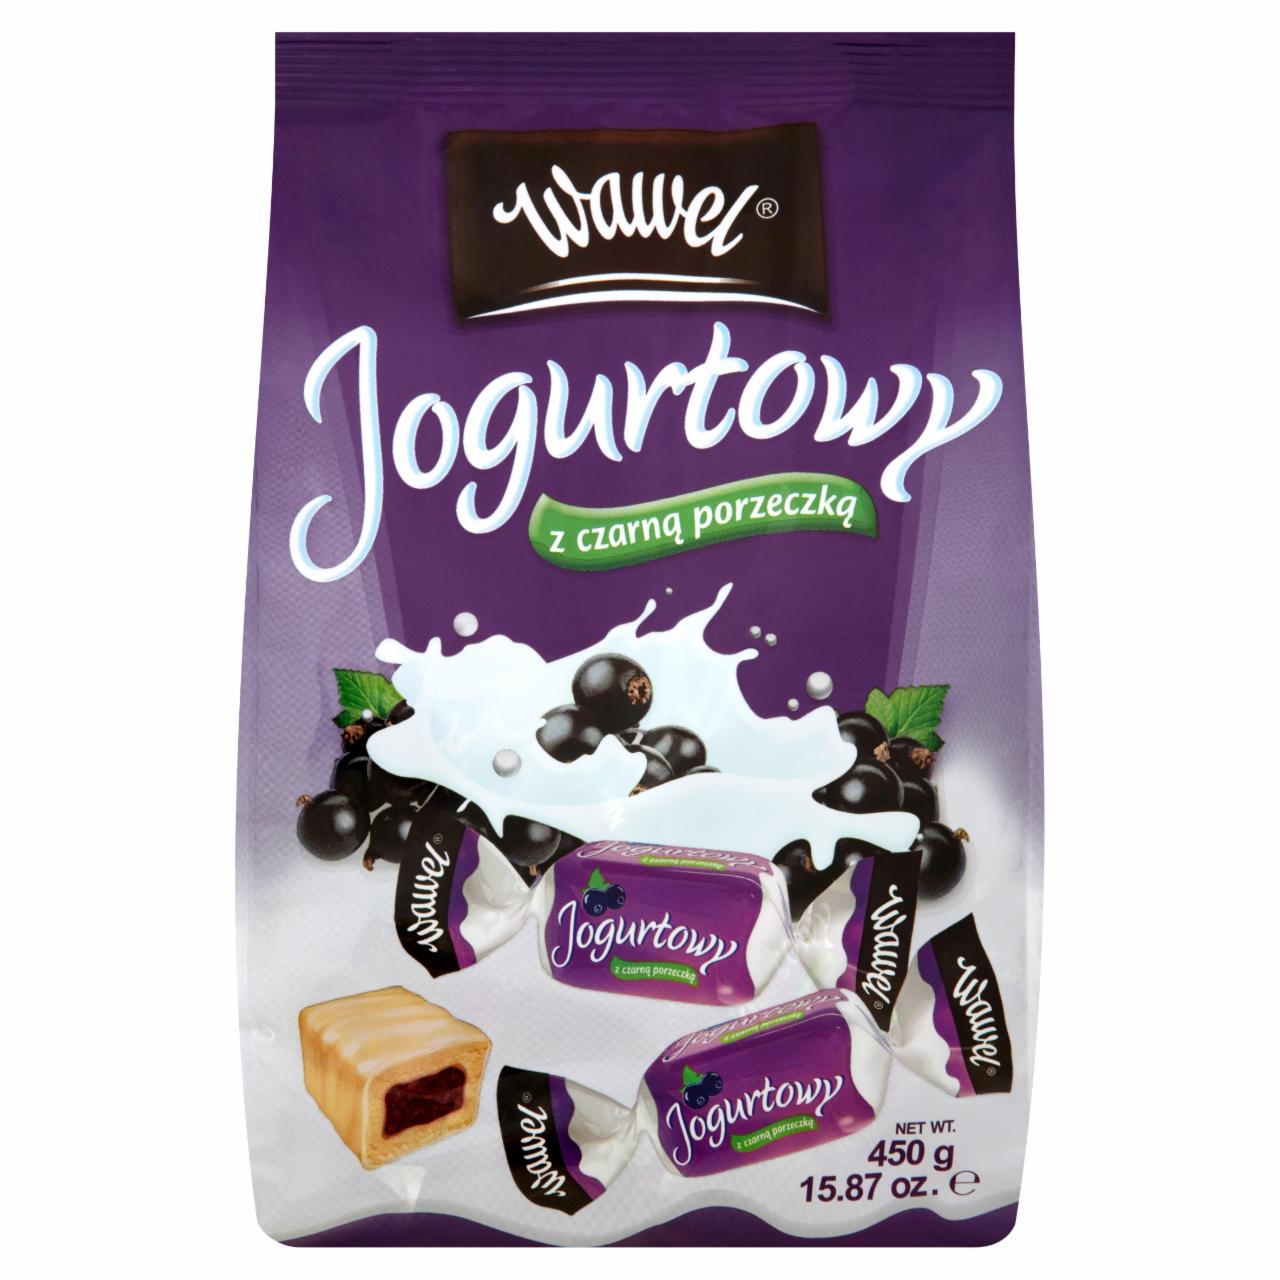 Zdjęcia - Wawel Jogurtowy z czarną porzeczką Cukierki w białej polewie nadziewane 450 g